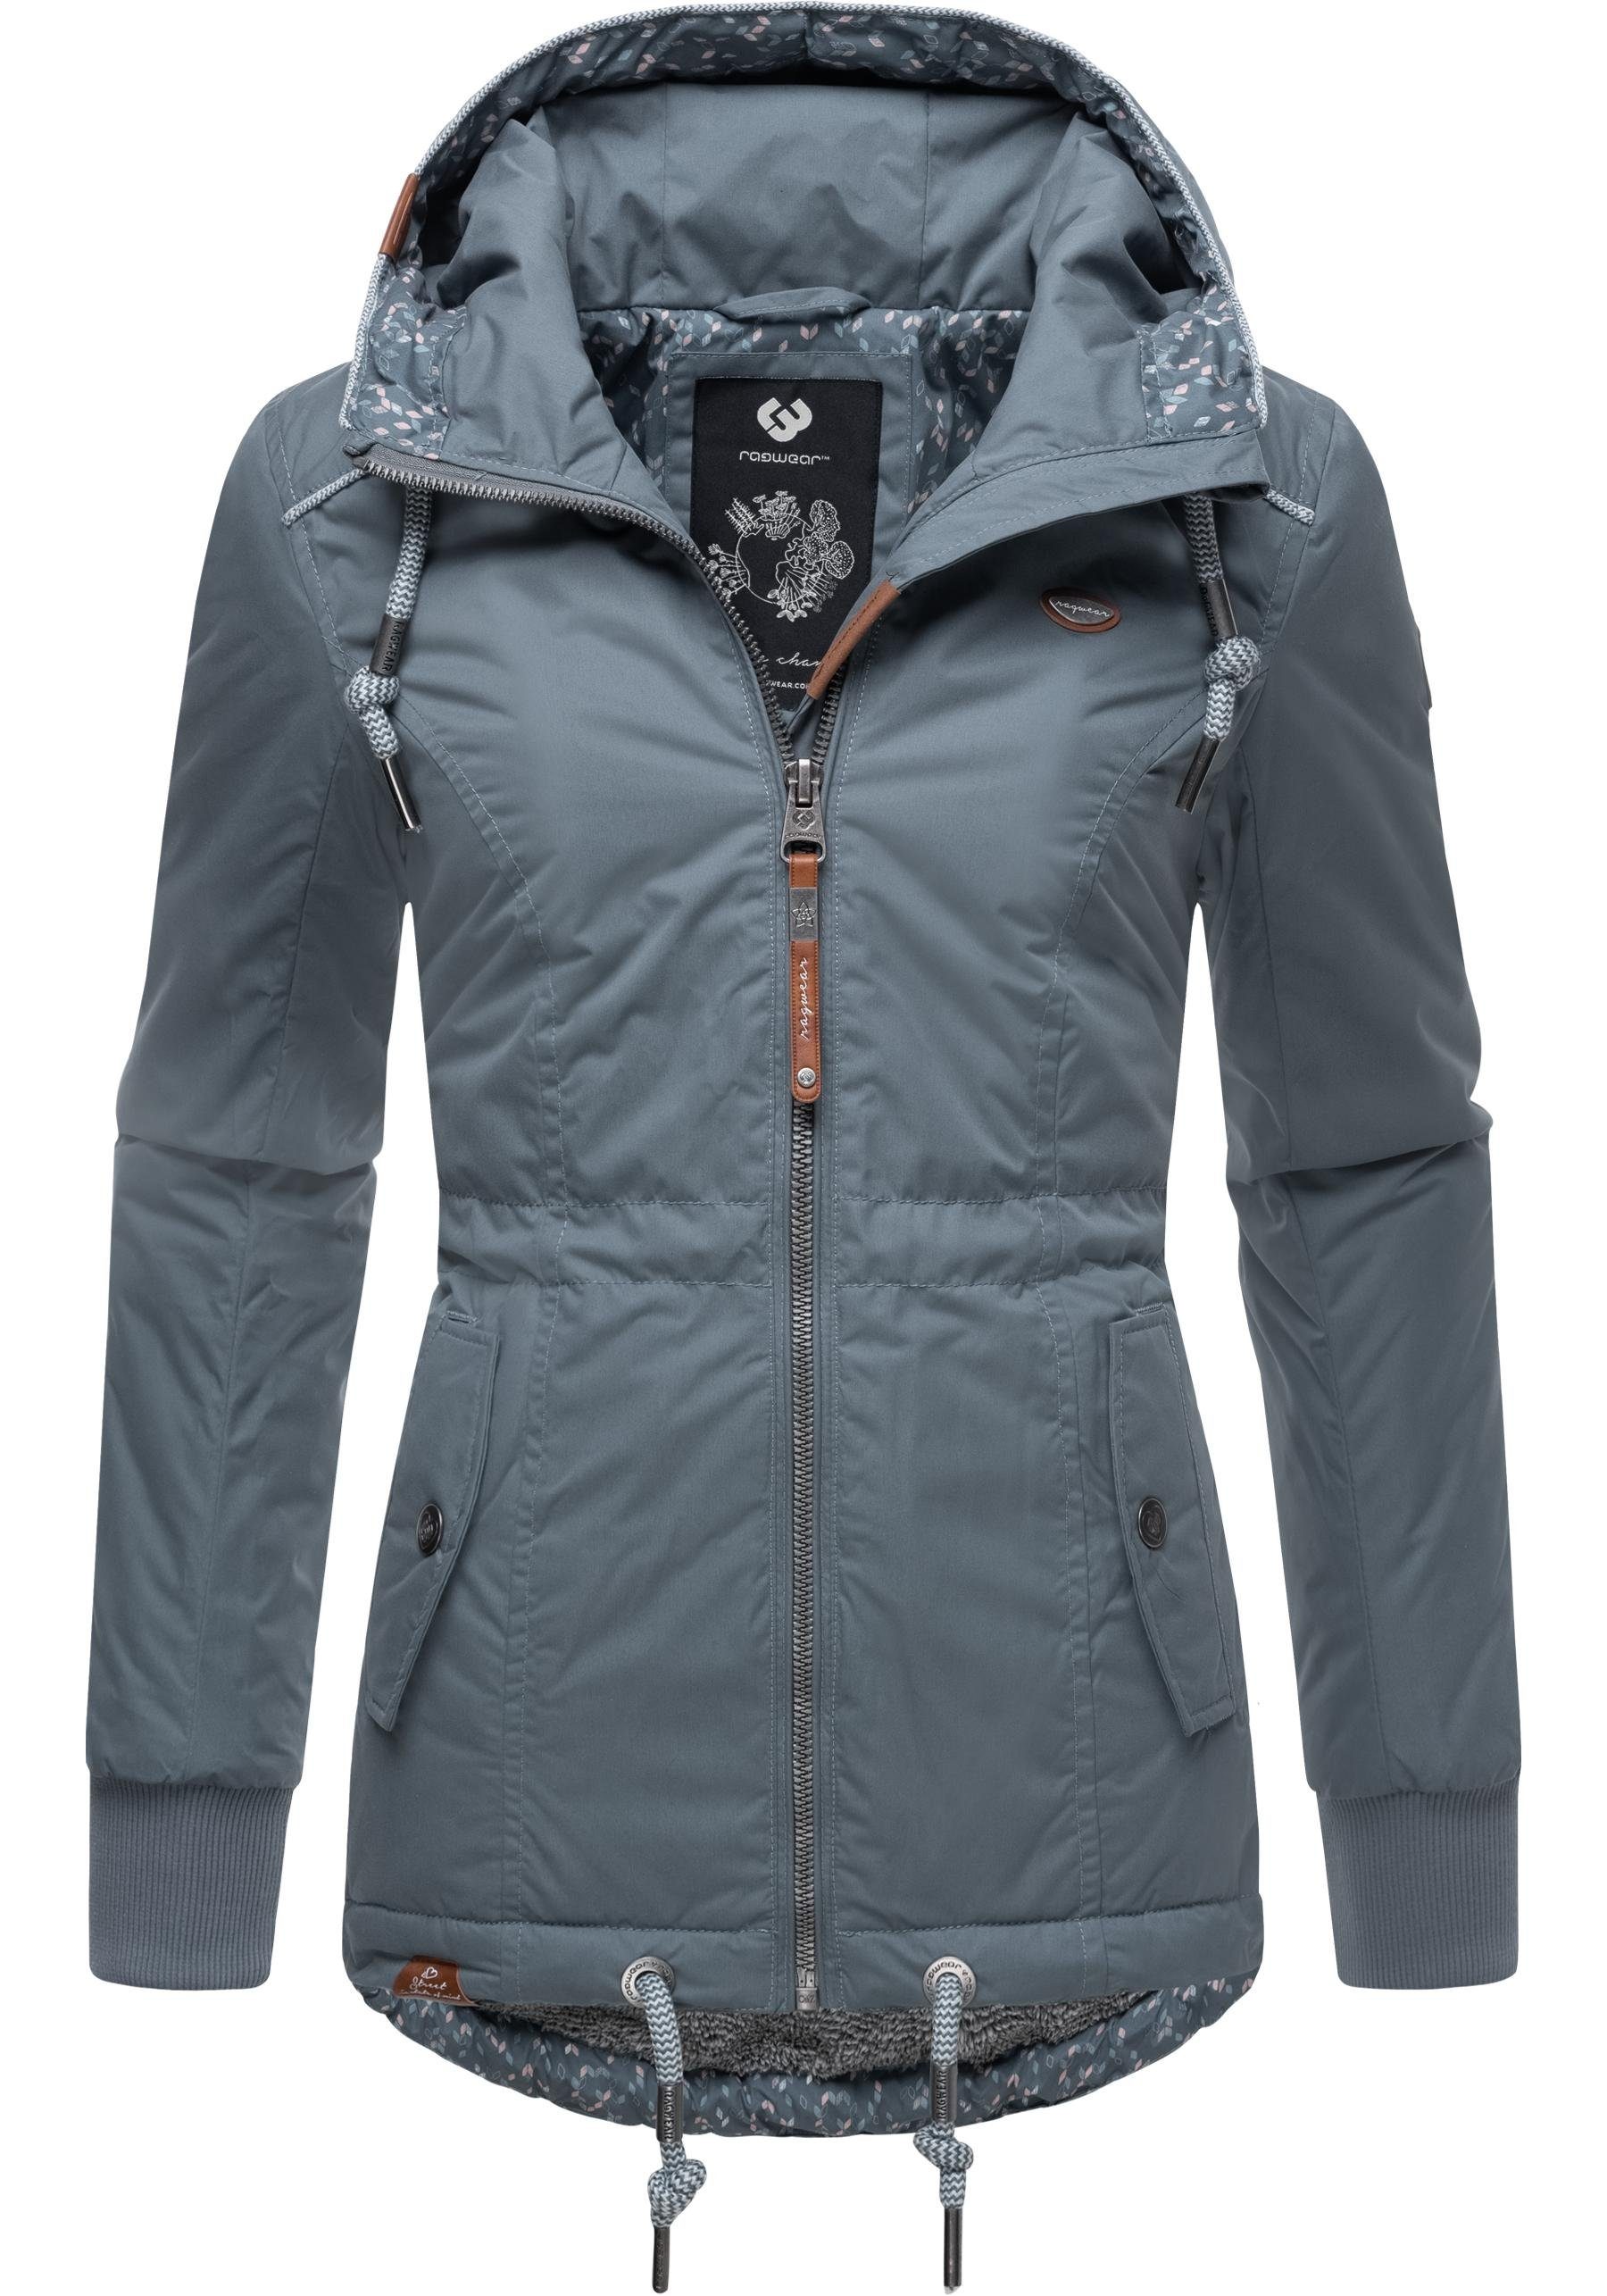 Ragwear Winterjacke YM-Danka stylische Winter Outdoorjacke mit Kapuze grau | Übergangsjacken